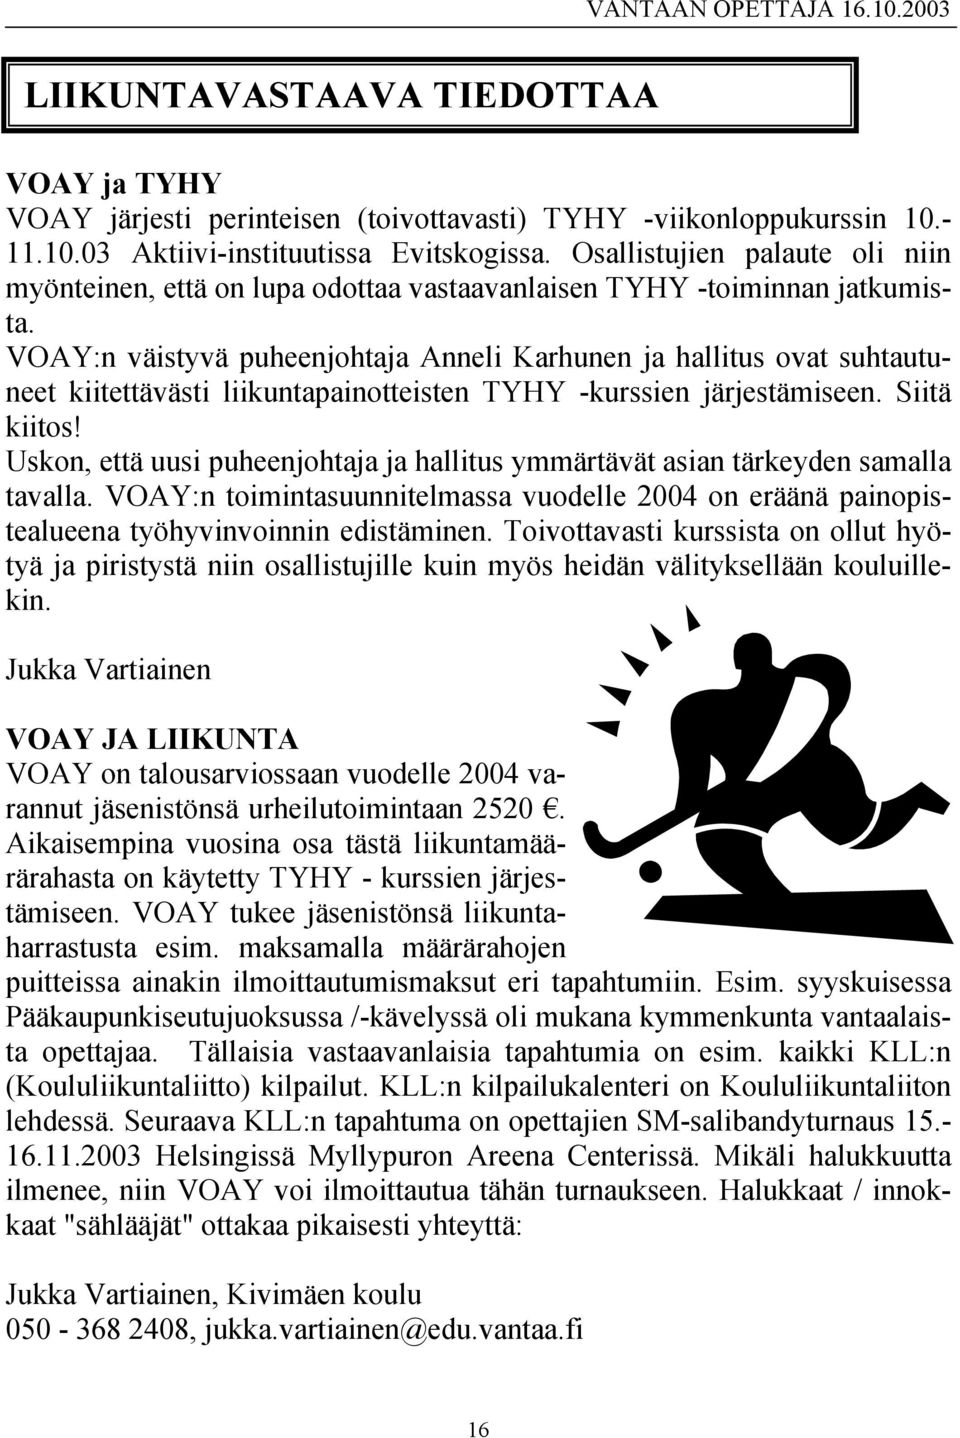 VOAY:n väistyvä puheenjohtaja Anneli Karhunen ja hallitus ovat suhtautuneet kiitettävästi liikuntapainotteisten TYHY -kurssien järjestämiseen. Siitä kiitos!